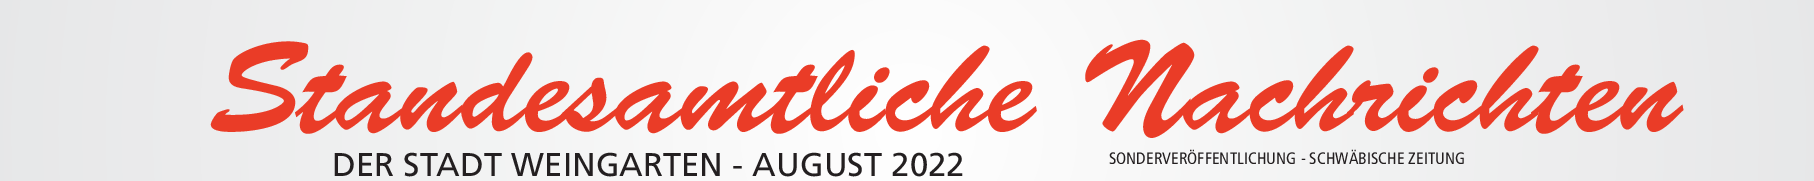 Standesamtliche Nachrichten - Der Stadt Weingarten - August 2022